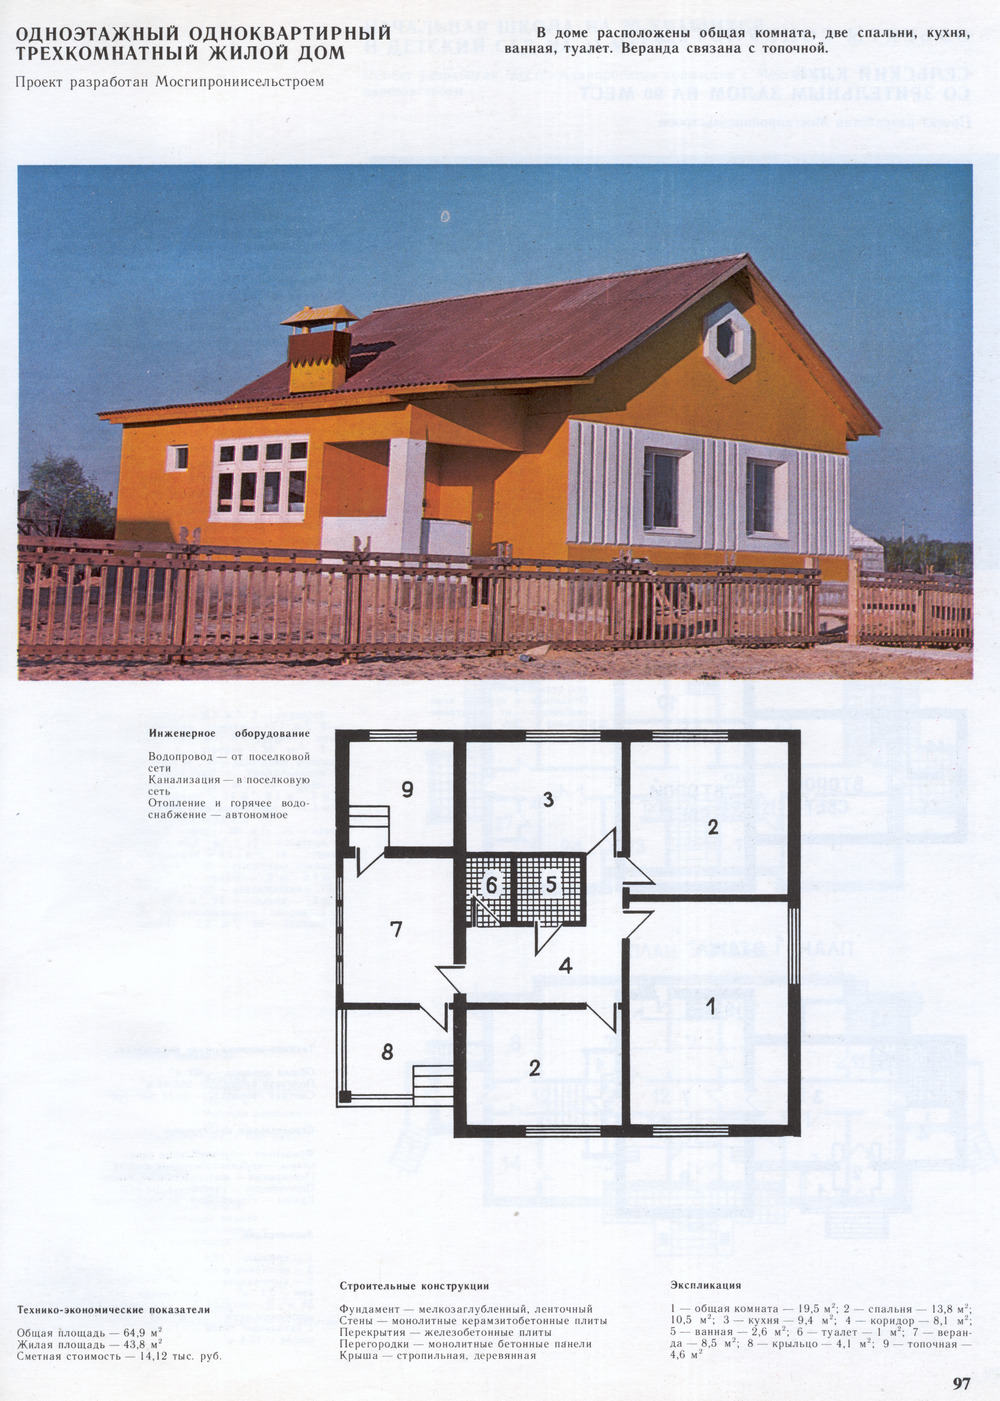 Project Жилой дом 1-этажный 1-квартирный 3-комнатный (монолитные плиты) (проект МосгипроНИИсельстроя) — Drawings and Plans